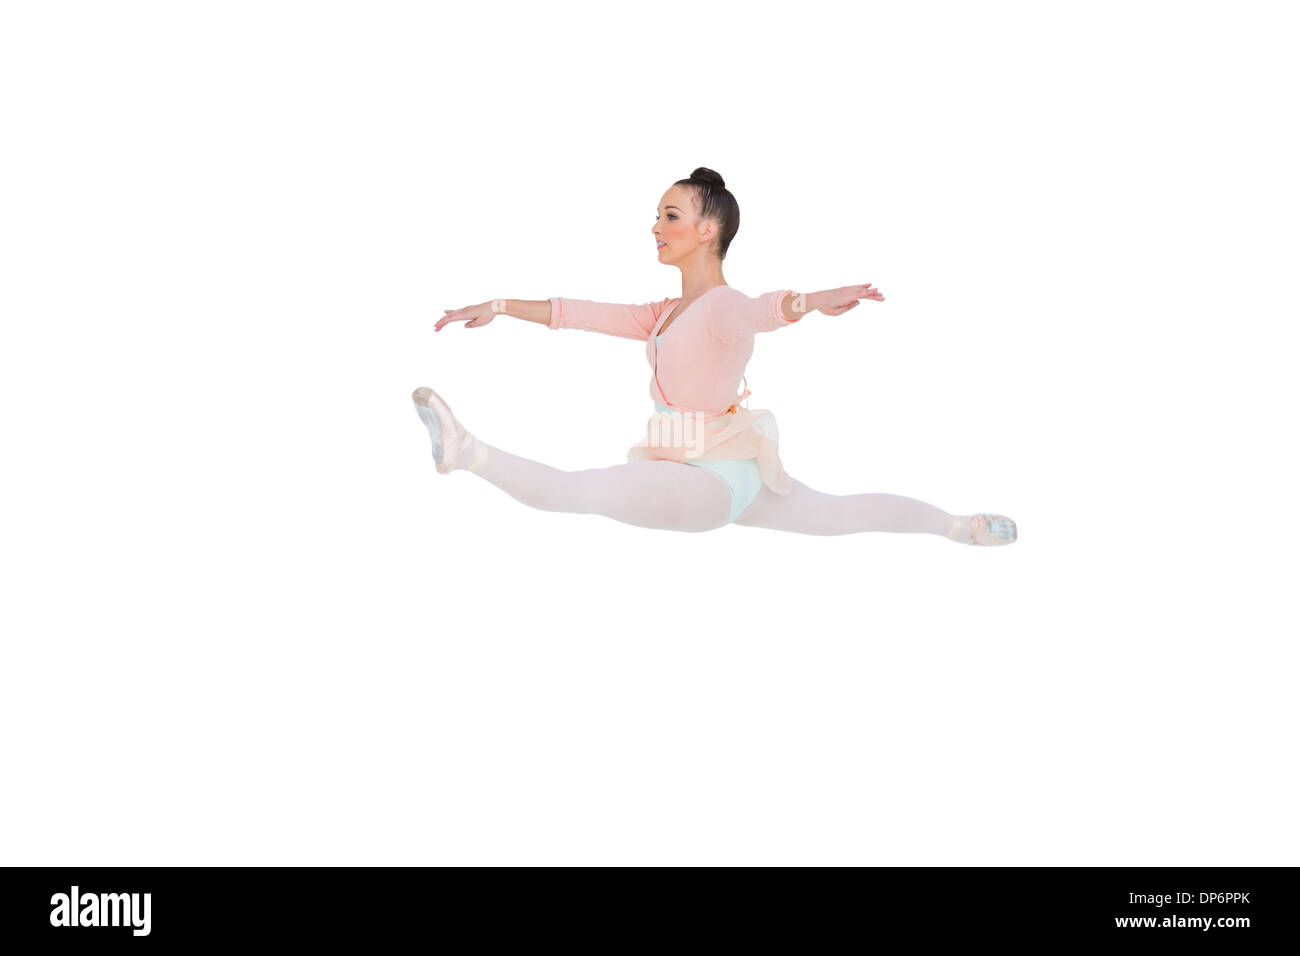 Beautiful ballerina doing the splits Stock Photo